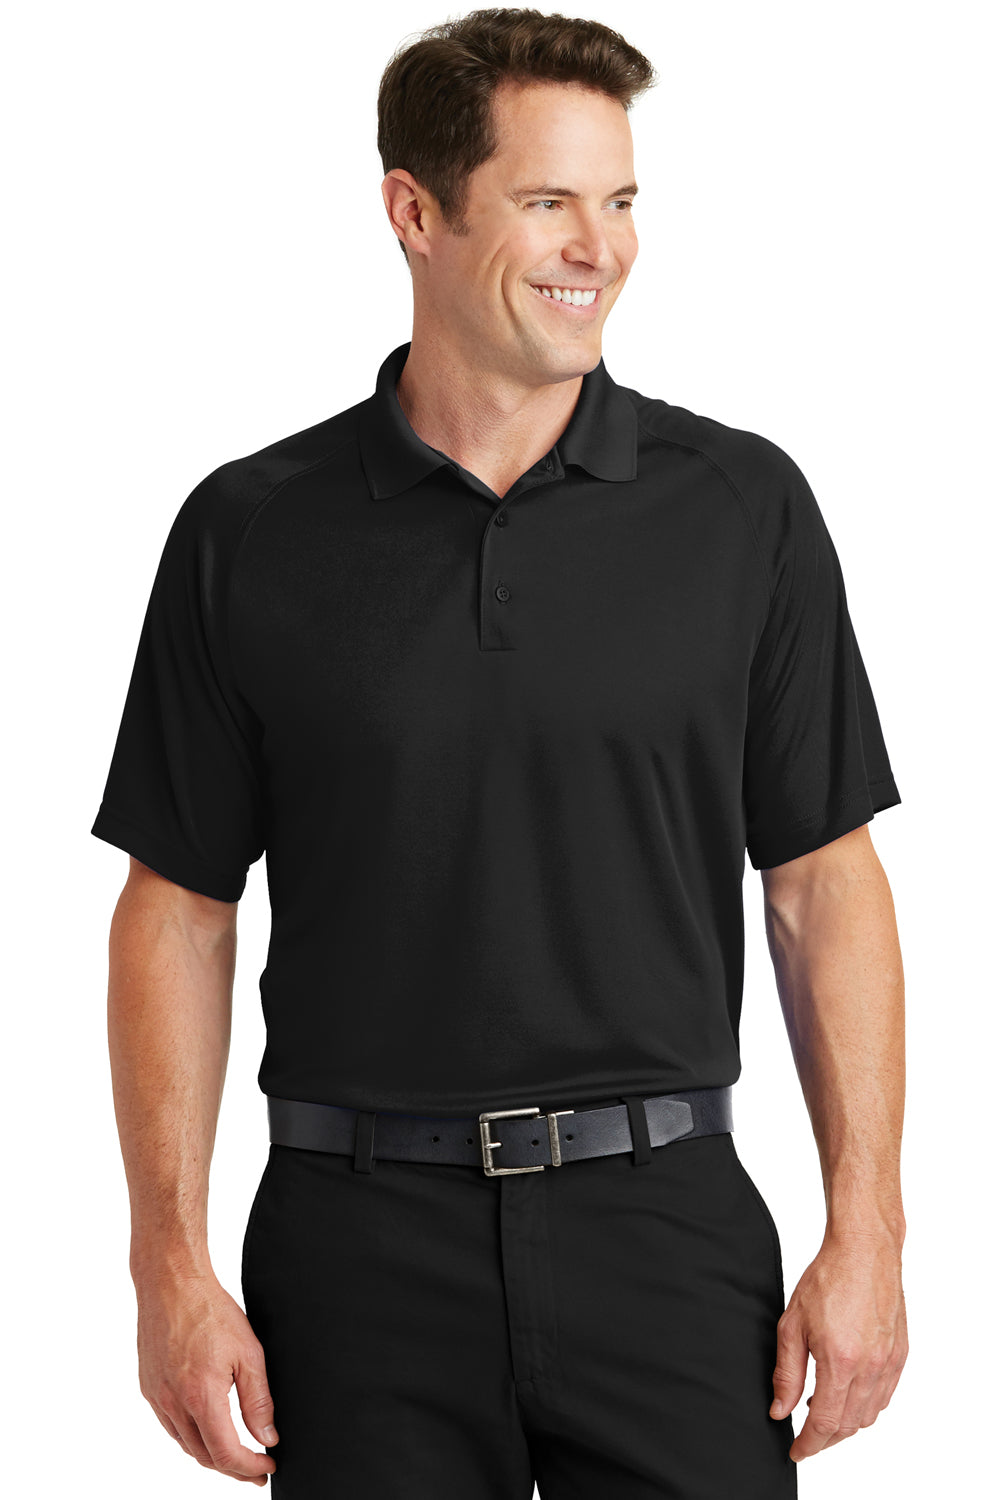 Sport-Tek T475 Mens Dry Zone Moisture Wicking Short Sleeve Polo Shirt Black Front